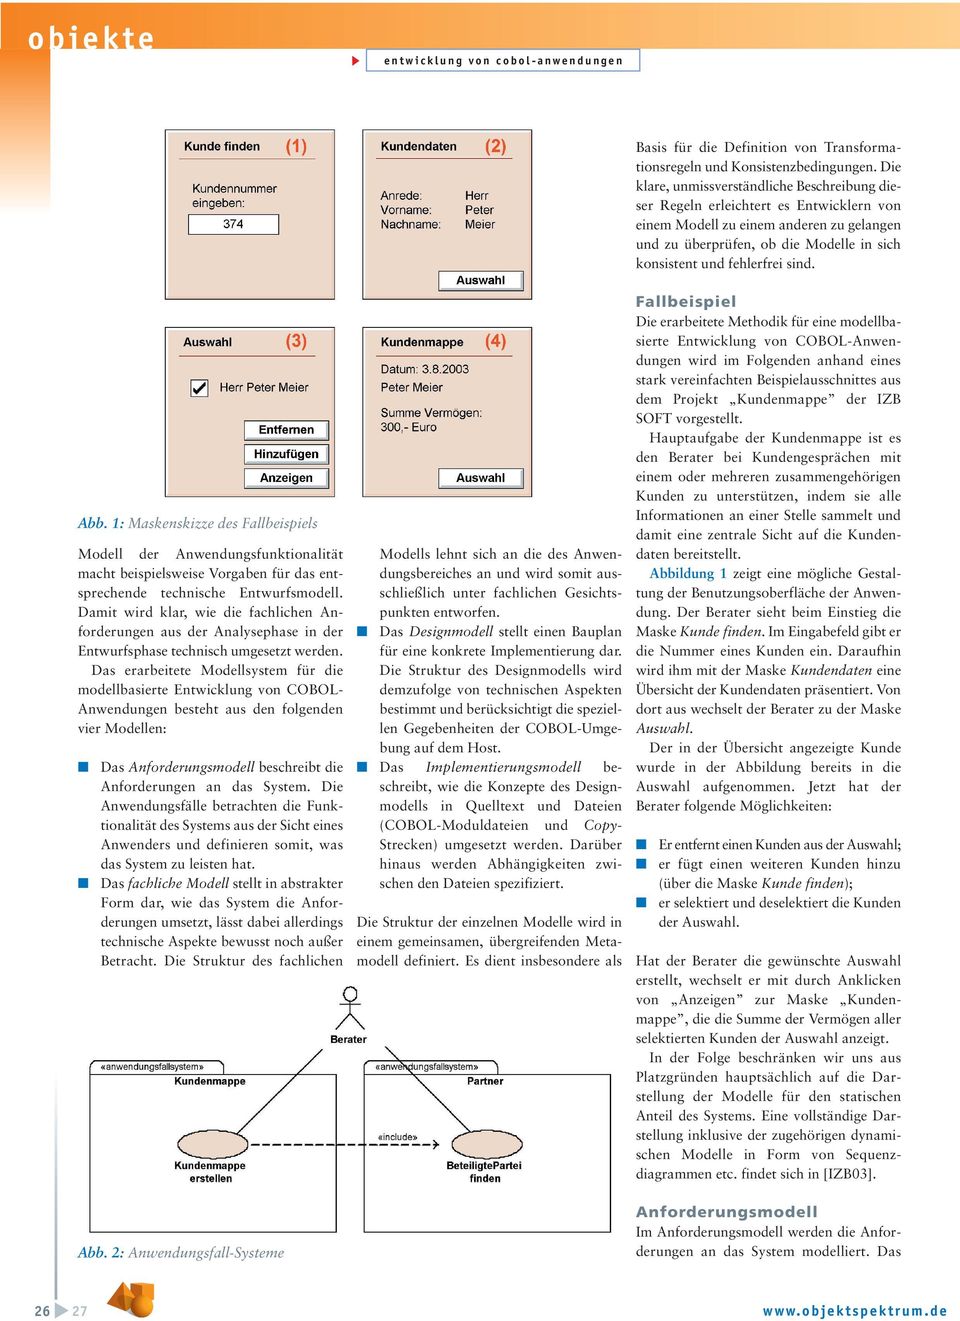 sind. Abb. 1: Maskenskizze des Fallbeispiels Modell der Anwendungsfunktionalität macht beispielsweise Vorgaben für das entsprechende technische Entwurfsmodell.